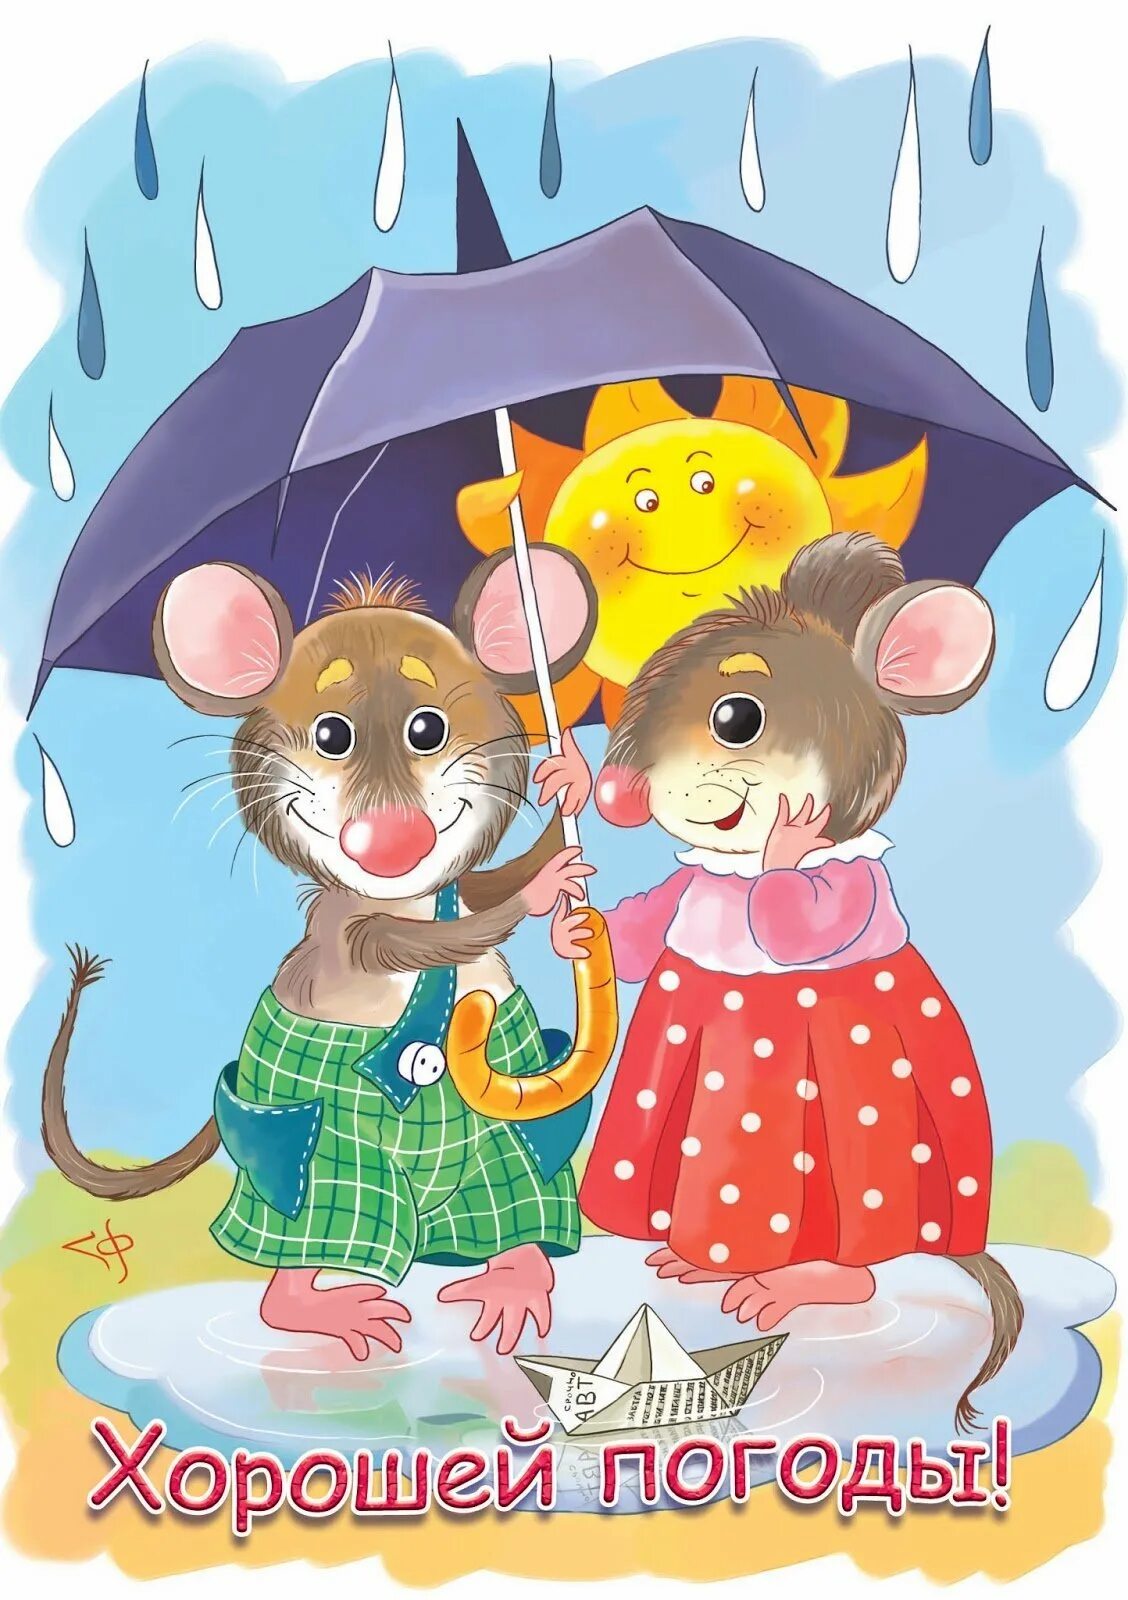 Мышь под зонтом. Мышка с зонтиком. Открытки хорошего настроения в дождливую погоду. Мышь с зонтом.